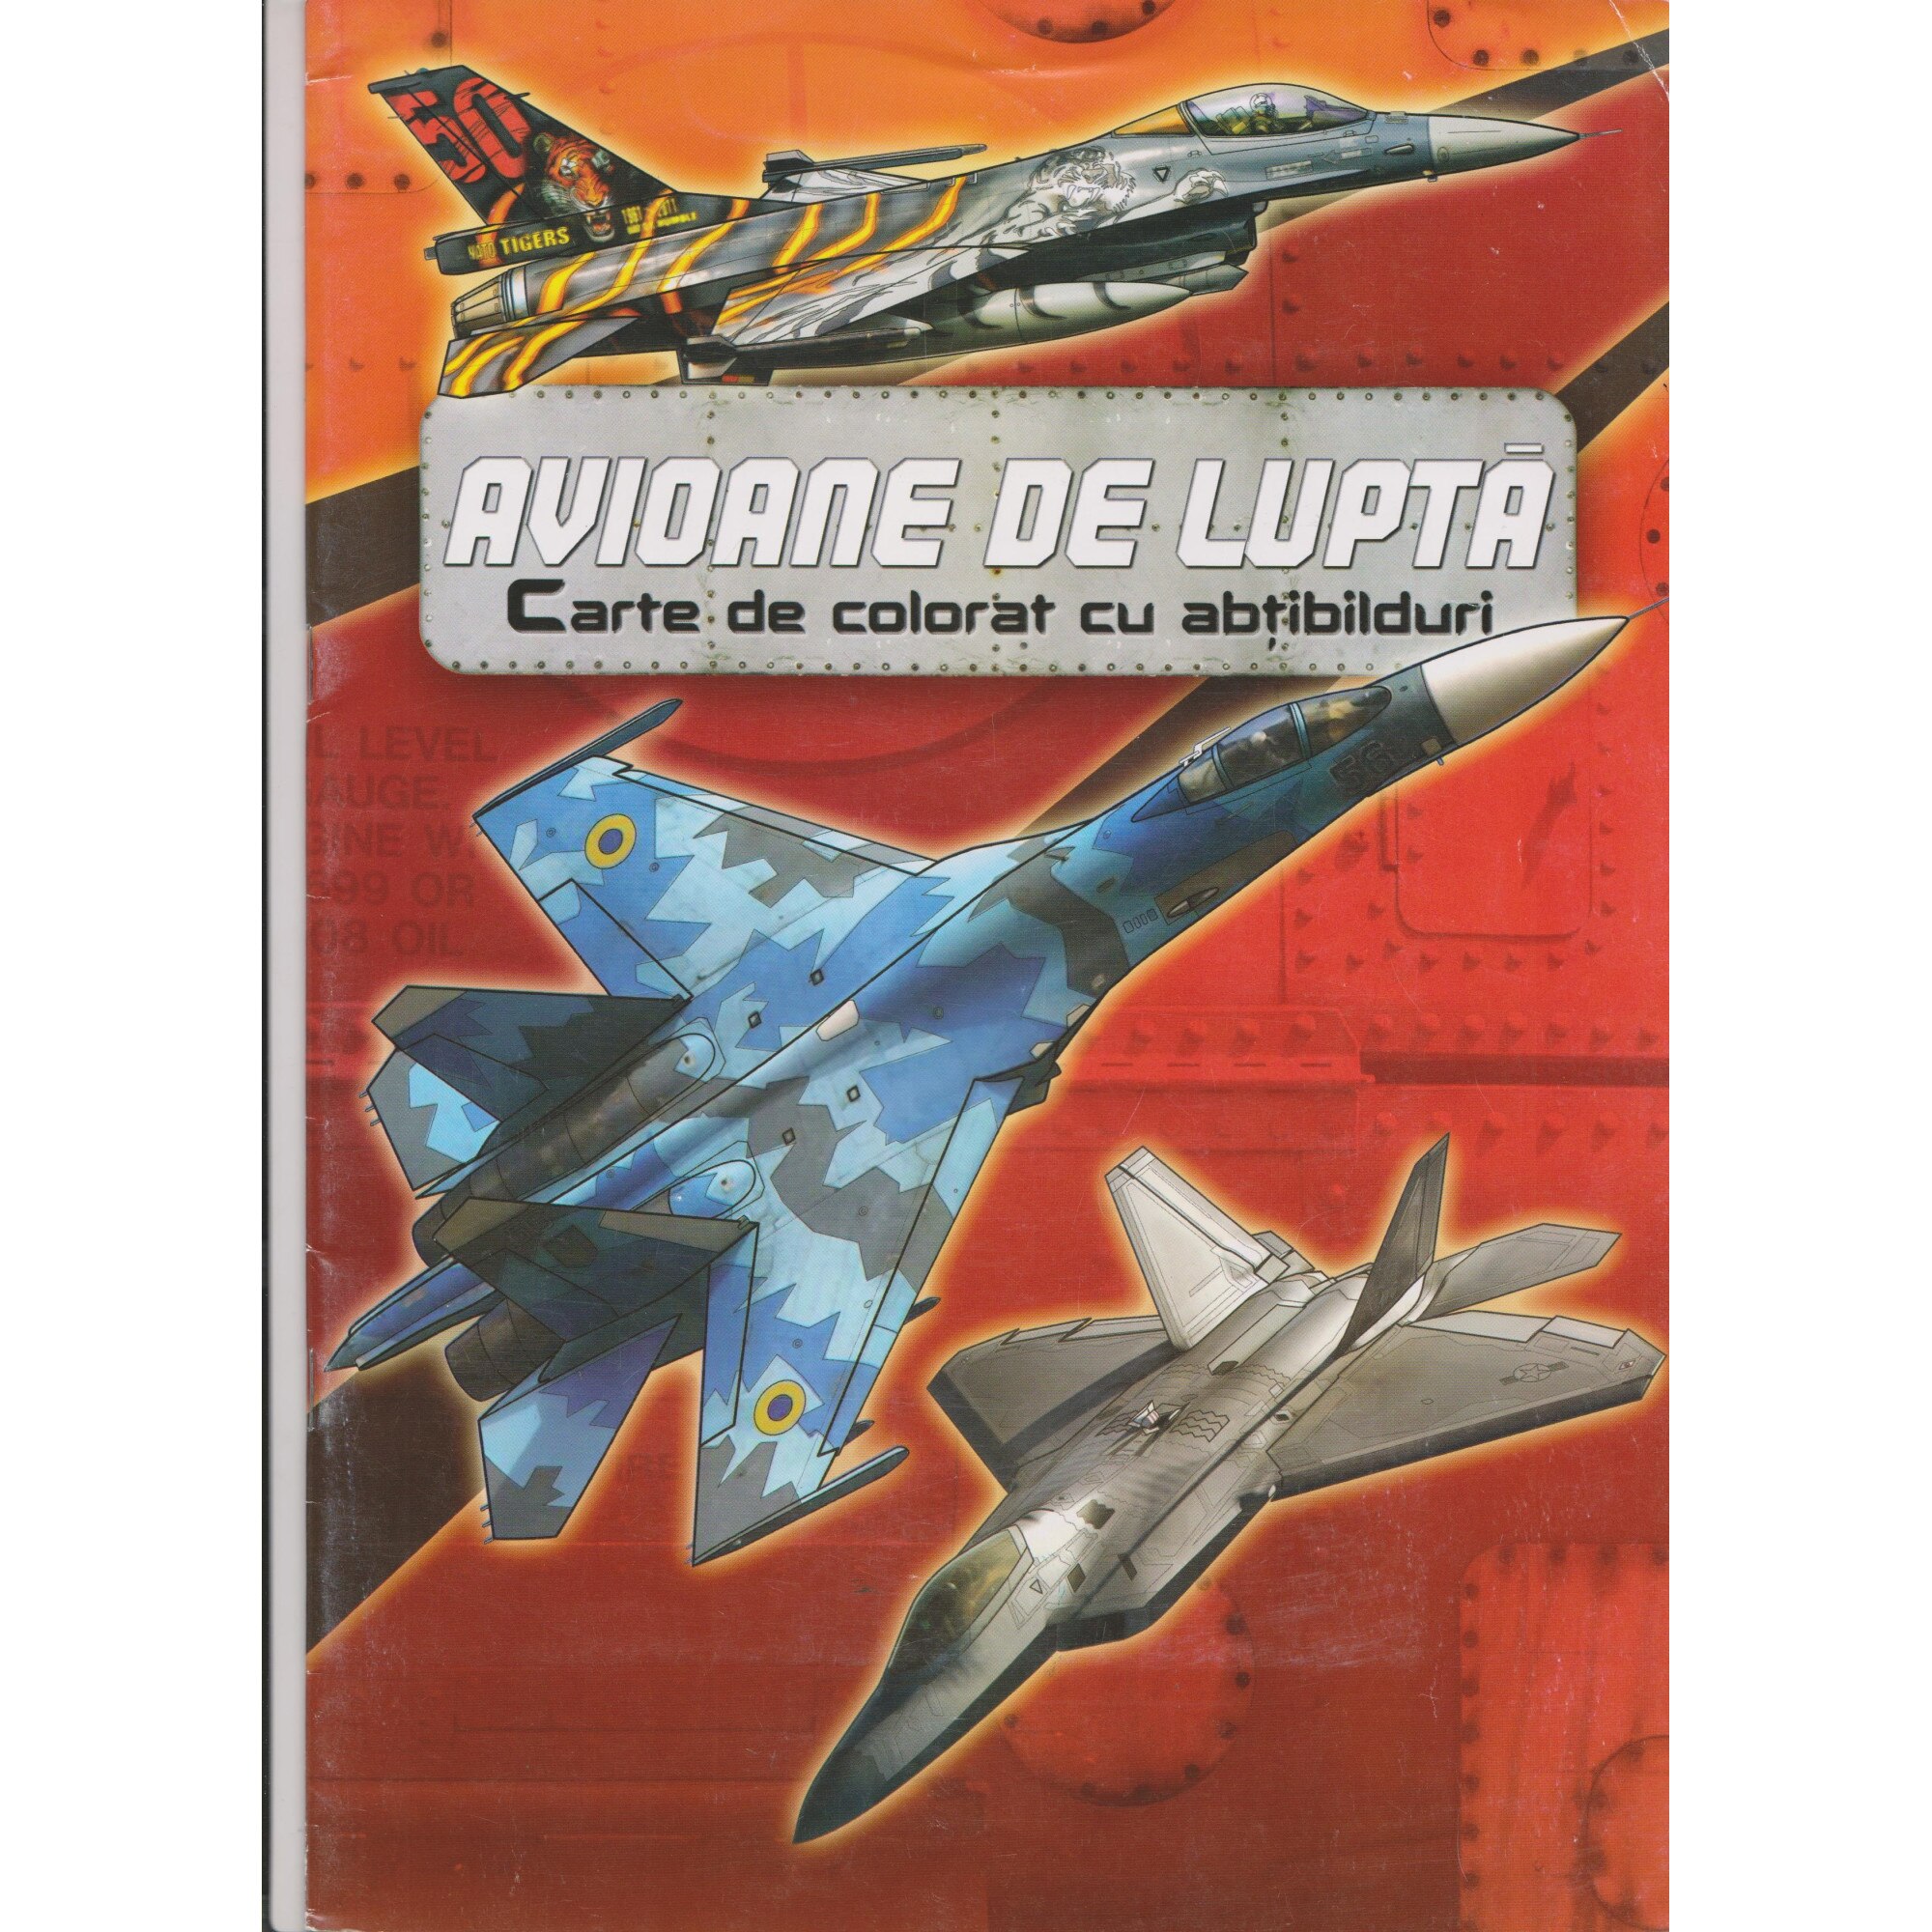 Insightful base wealth Avioane de lupta - Carte de colorat cu abtibilduri - eMAG.ro